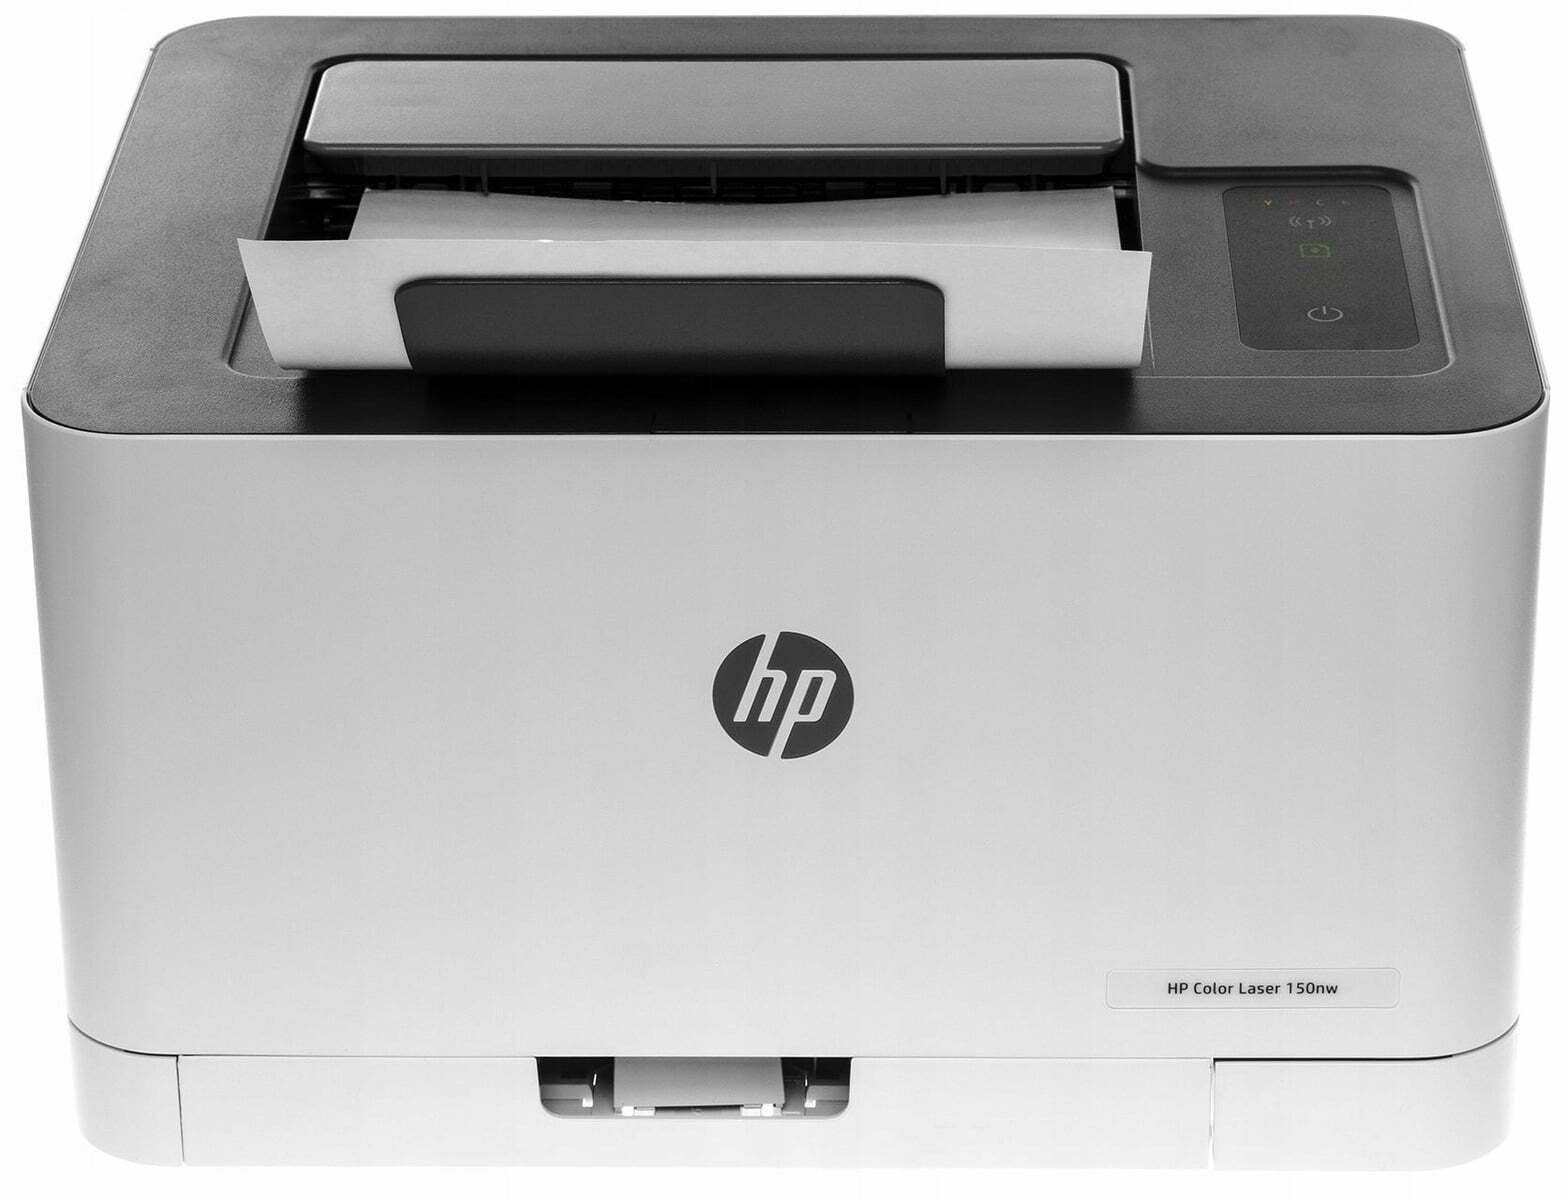 Drukarka-HP-Color-Laser-150nw-WiFi-Technologia-druku-laserowa-kolor